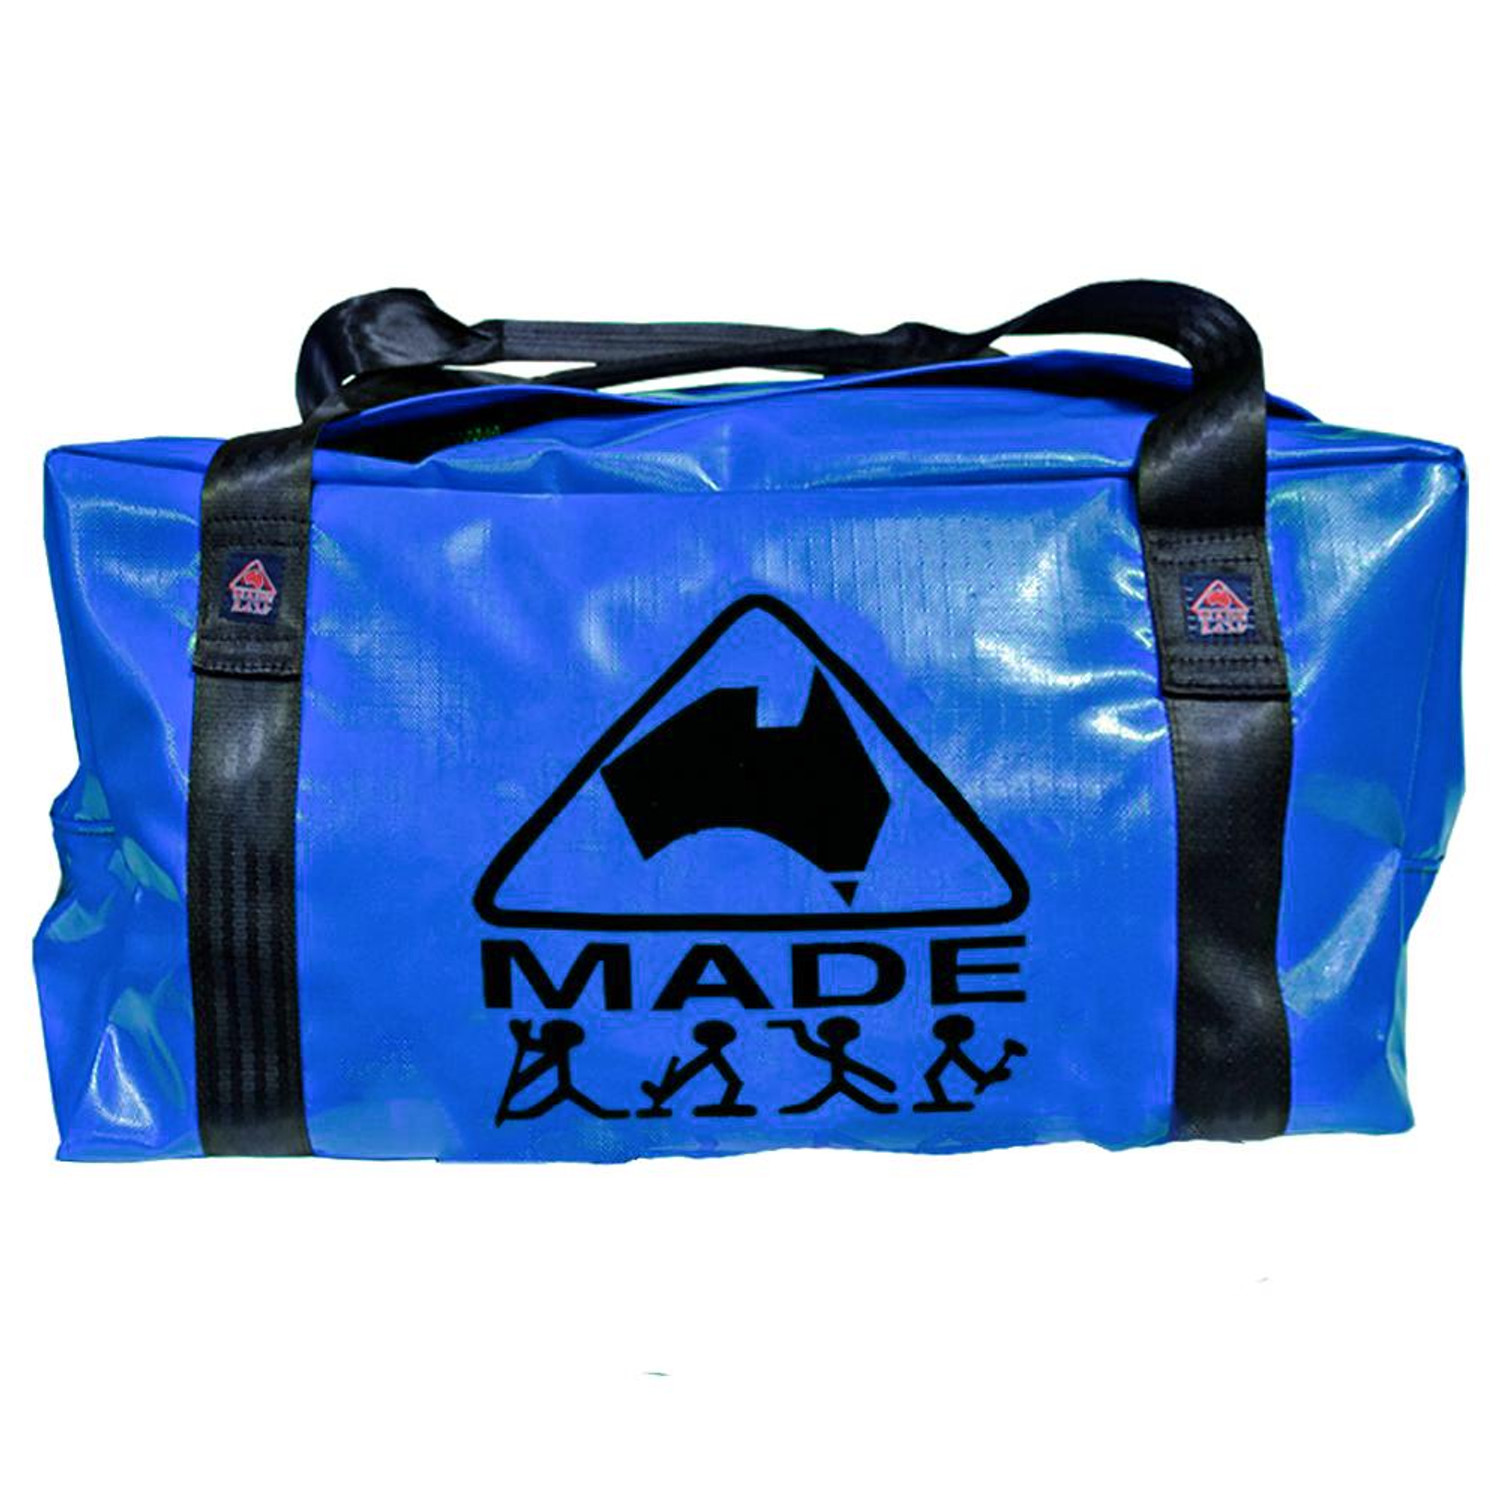  Copperhead PVC Ute Bag in Light Blue 